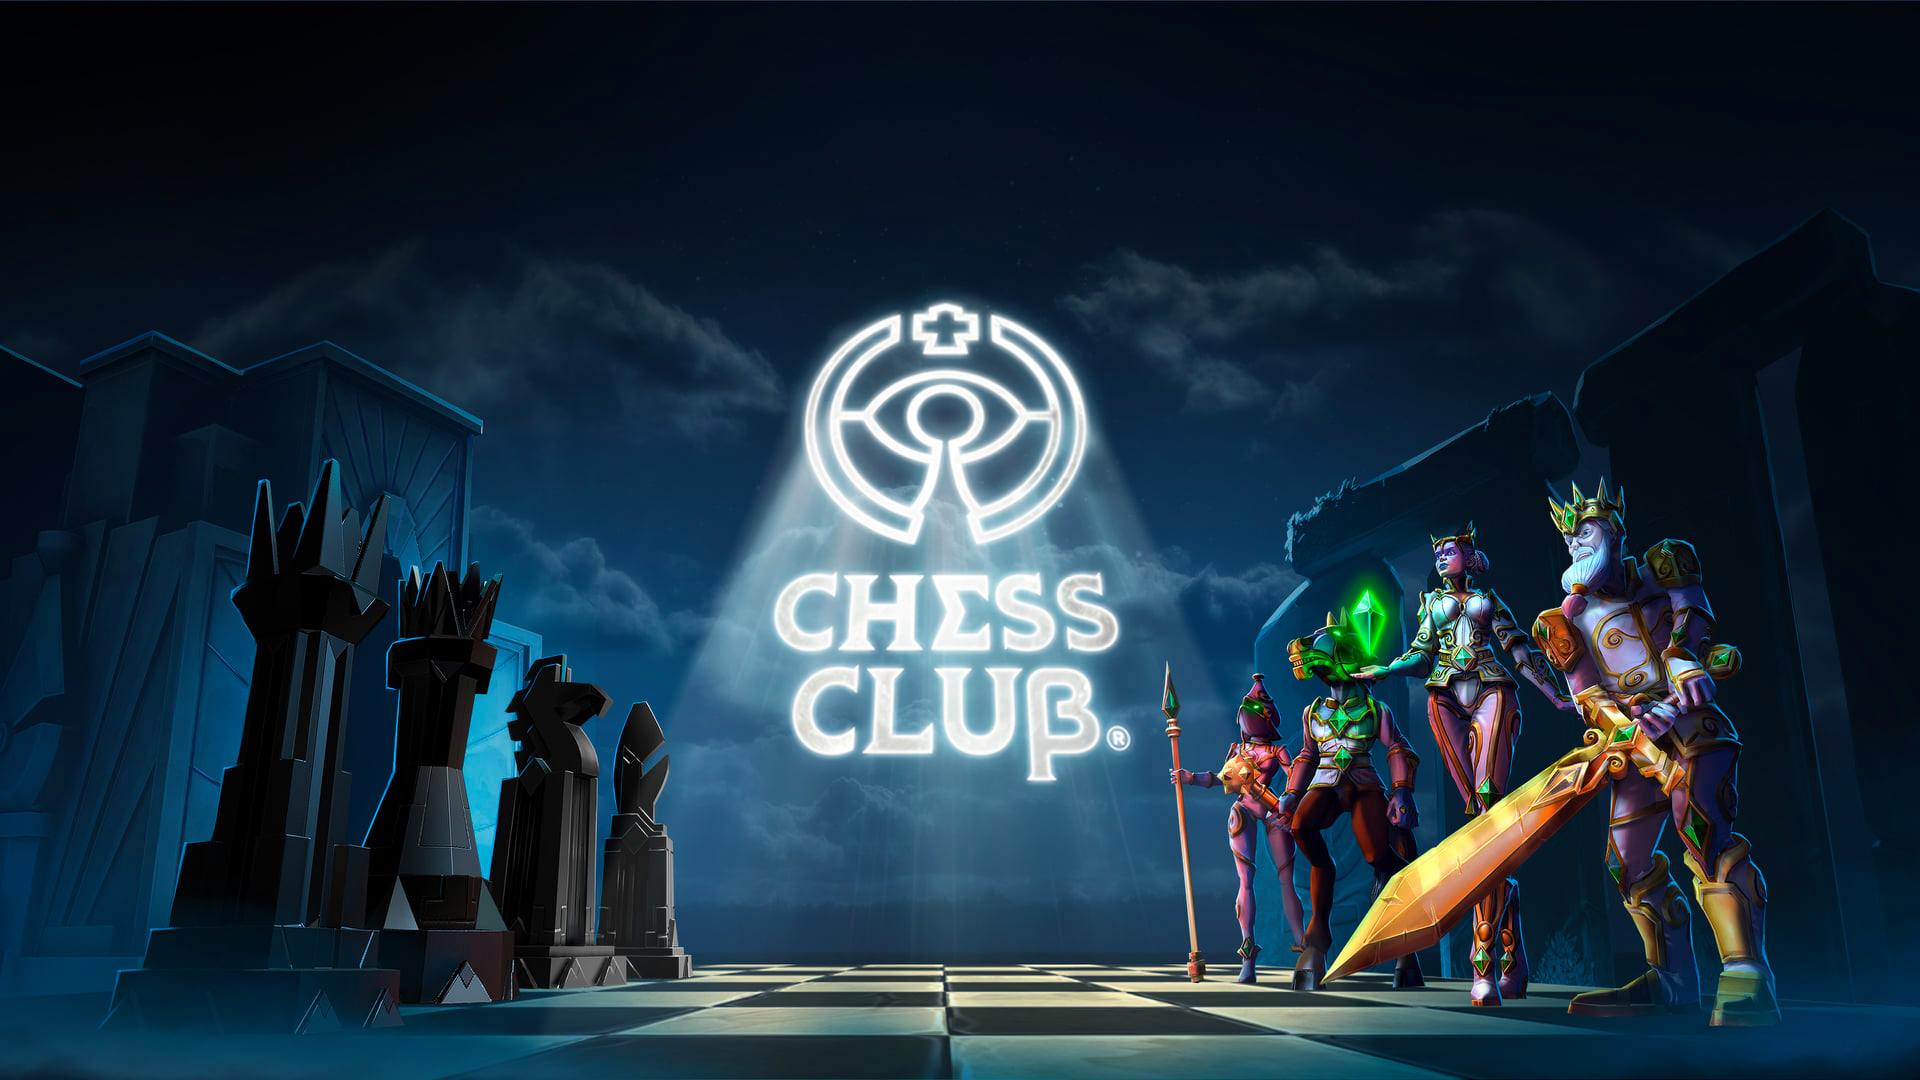 El ajedrez da el salto a la realidad virtual con el videojuego Chess Club de Odders Lab